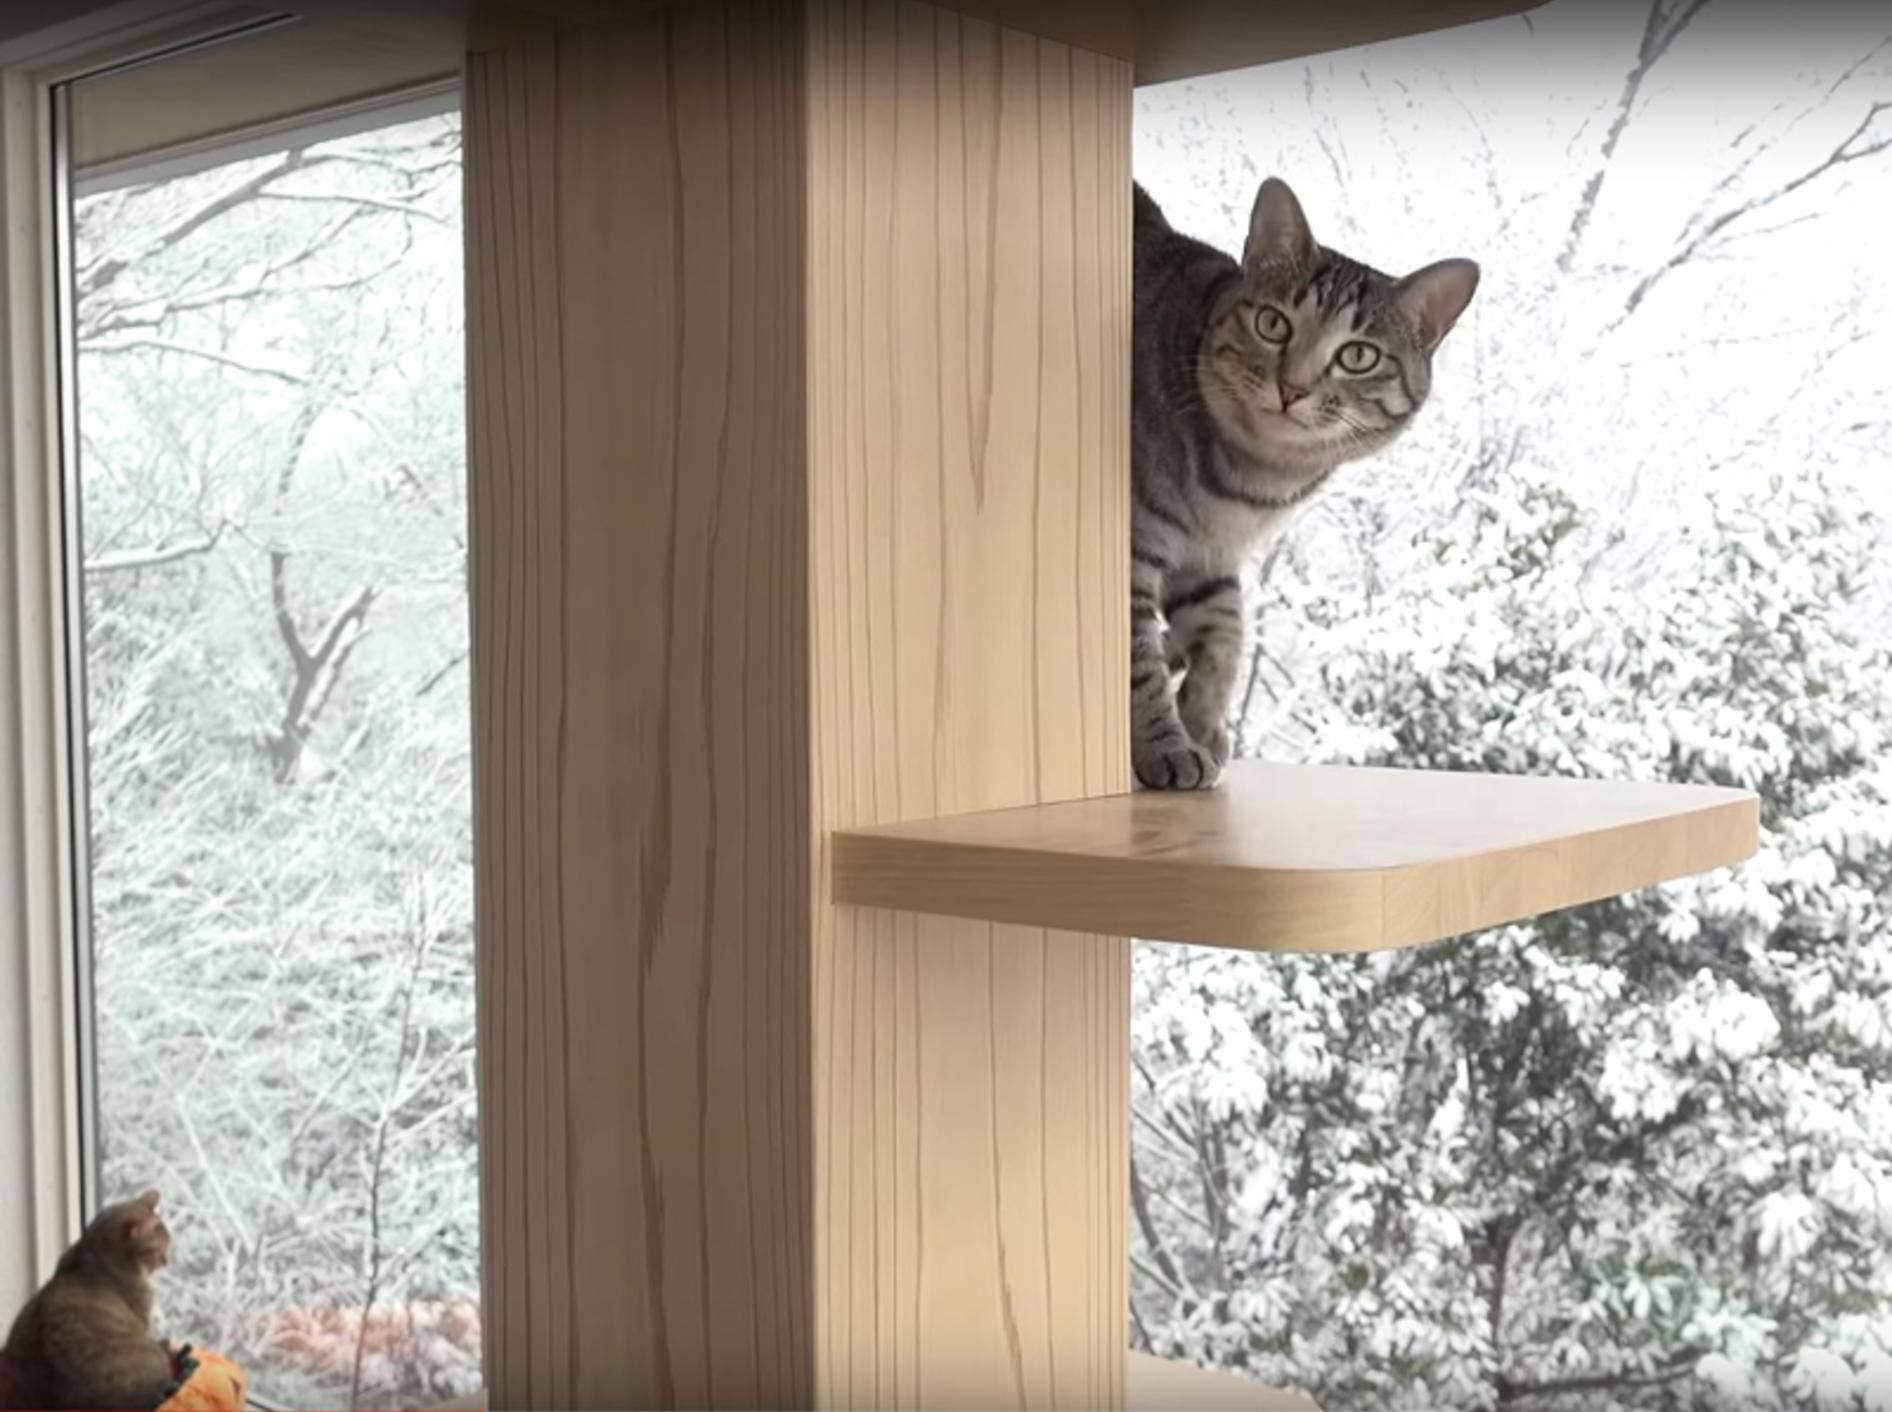 Schöne Aussichten für japanische Katzen-WG – YouTube / 10 Cats.+